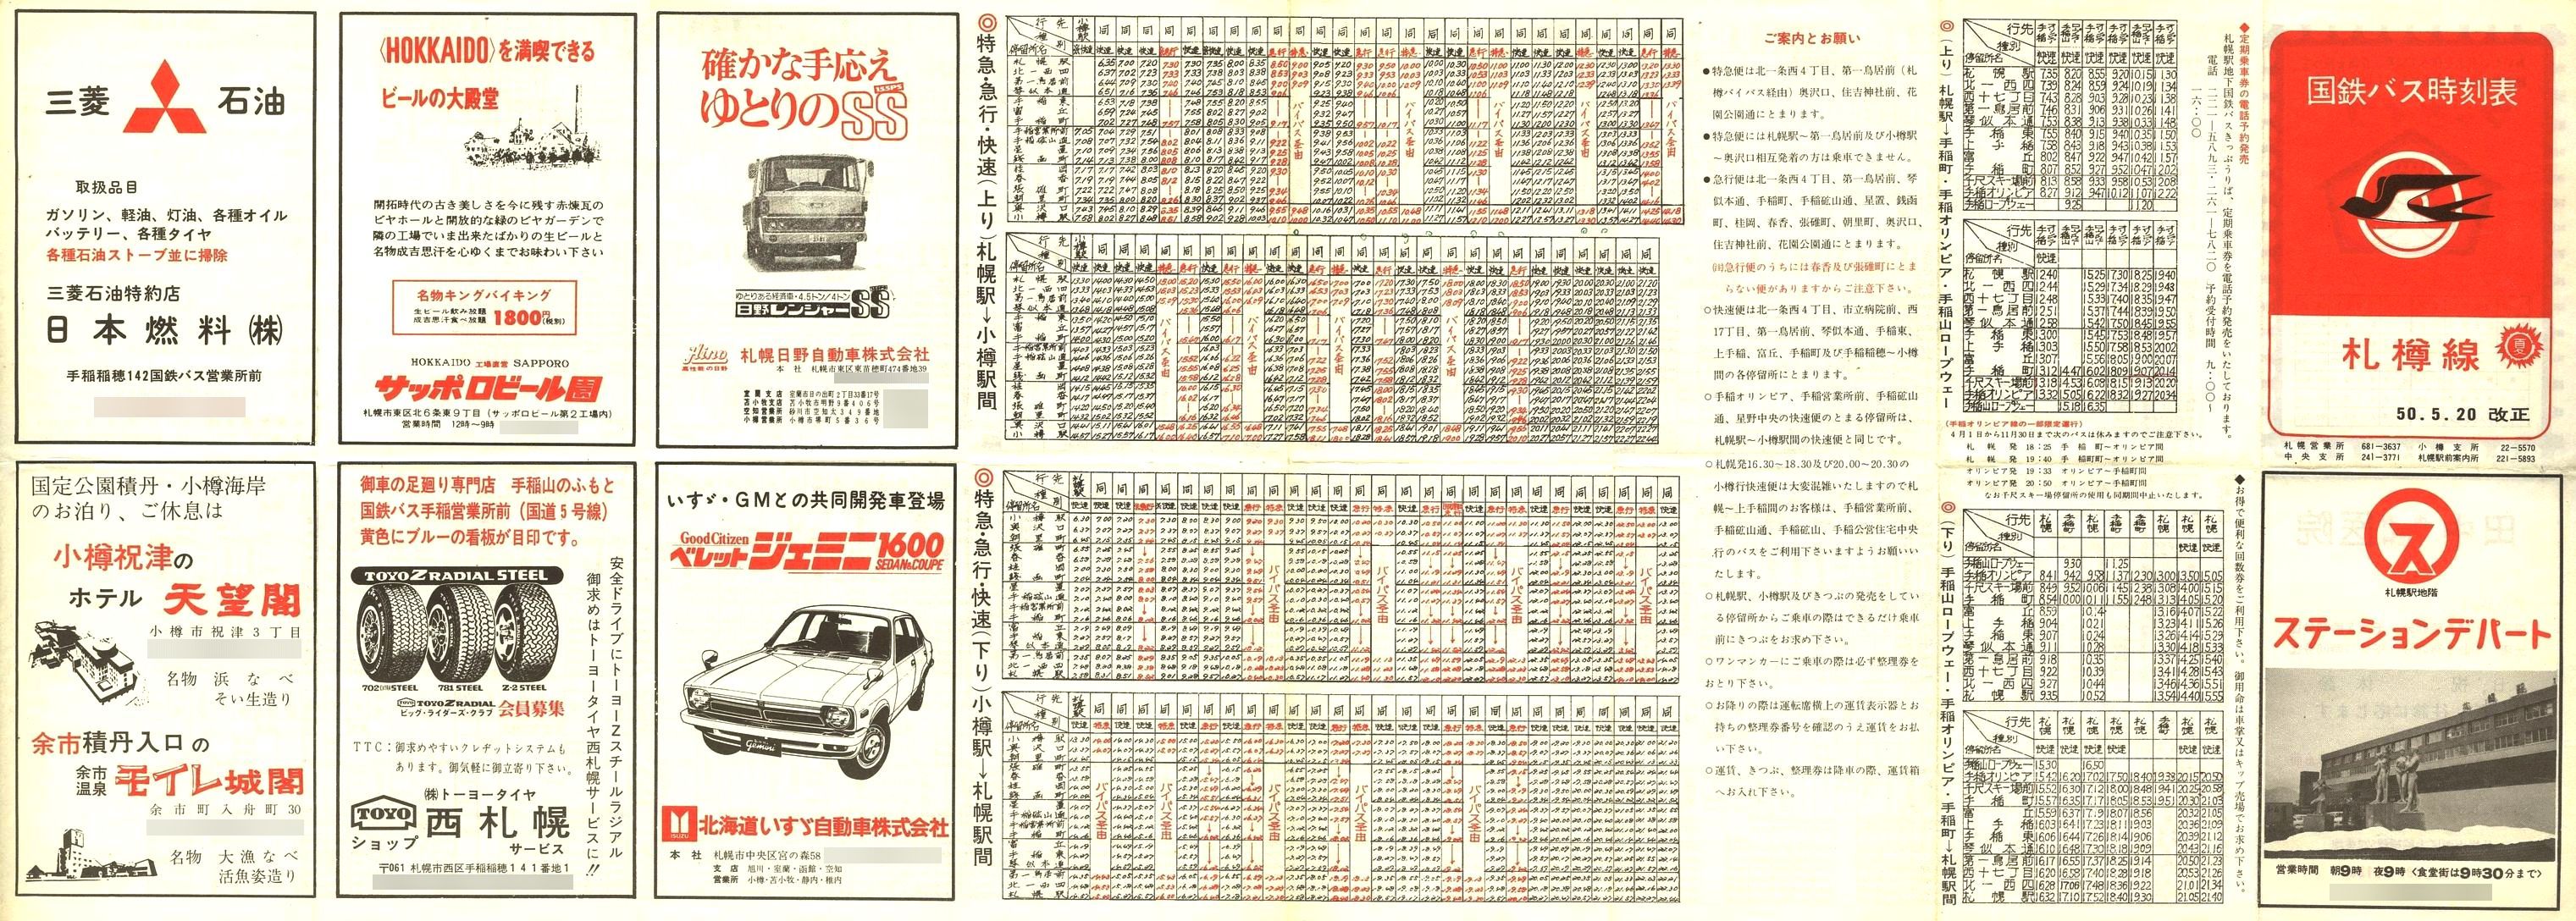 1975-05-20改正_国鉄バス_札樽線時刻表表面